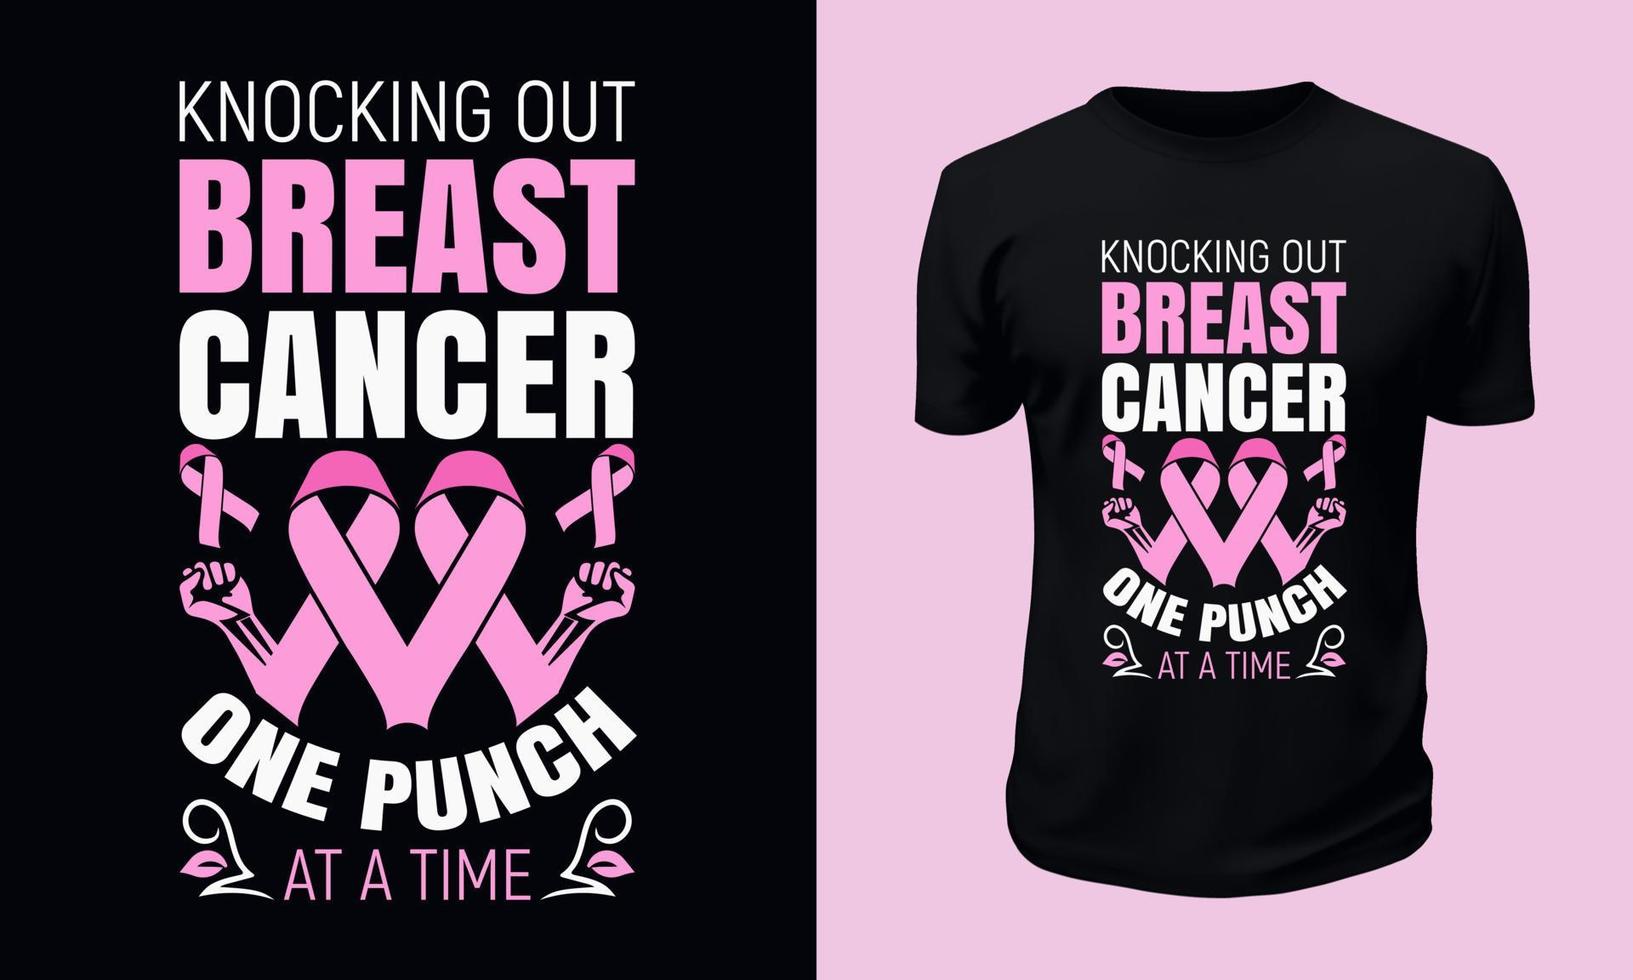 design de camiseta de conscientização do câncer de mama vetor